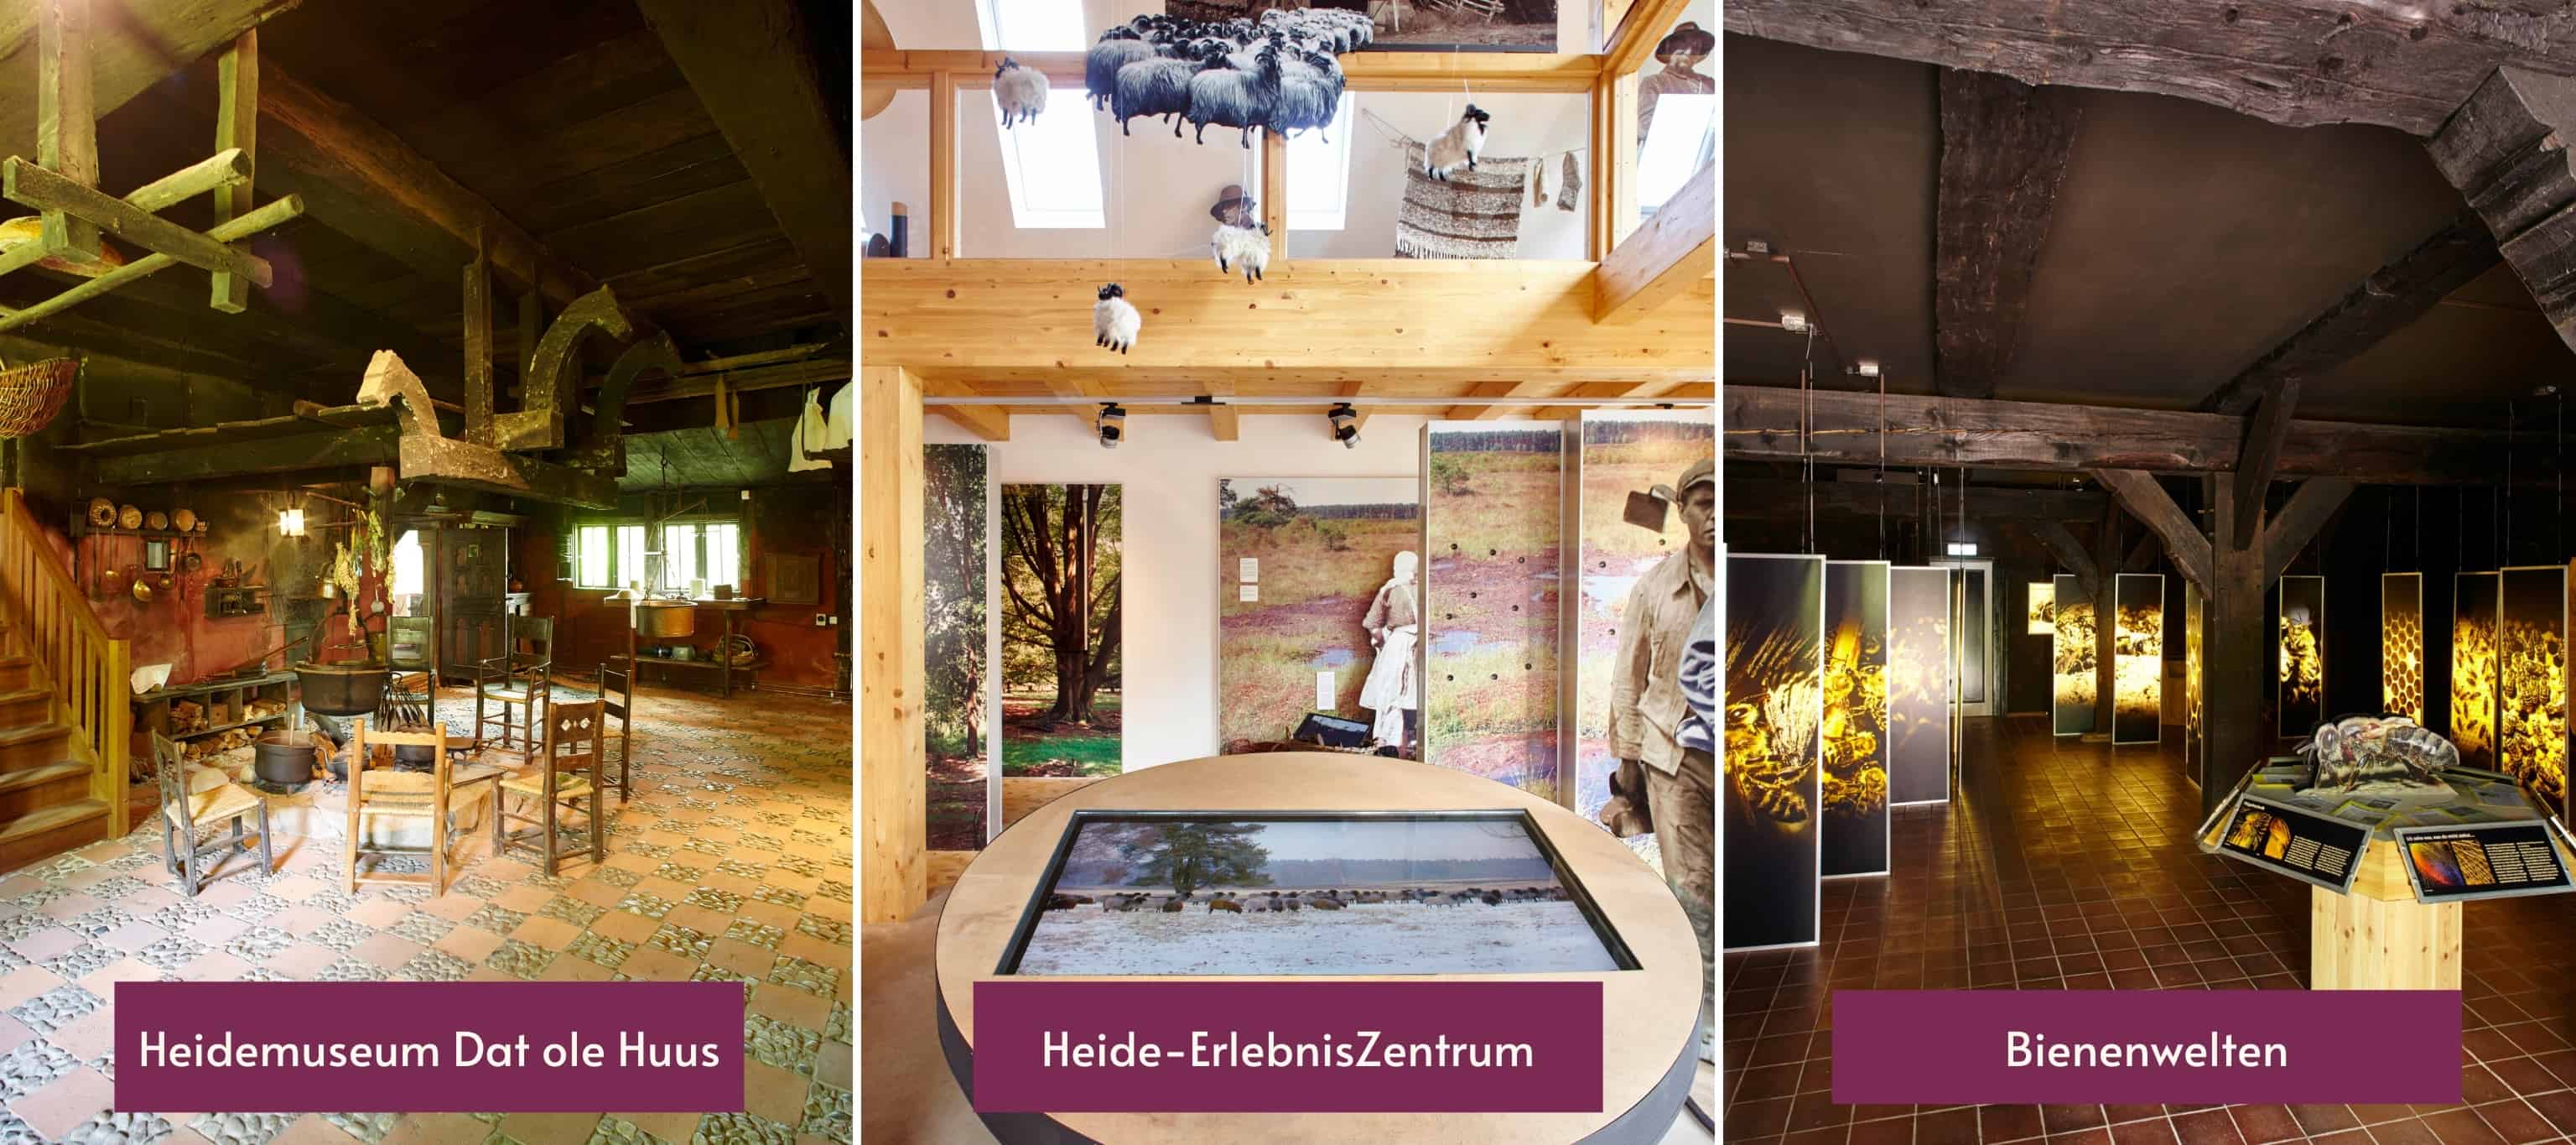 Die Ausstellungen des VNP: Das Heidemuseum "Dat ole Huus", das Heide-ErlebnisZentrum und die Bienenwelt